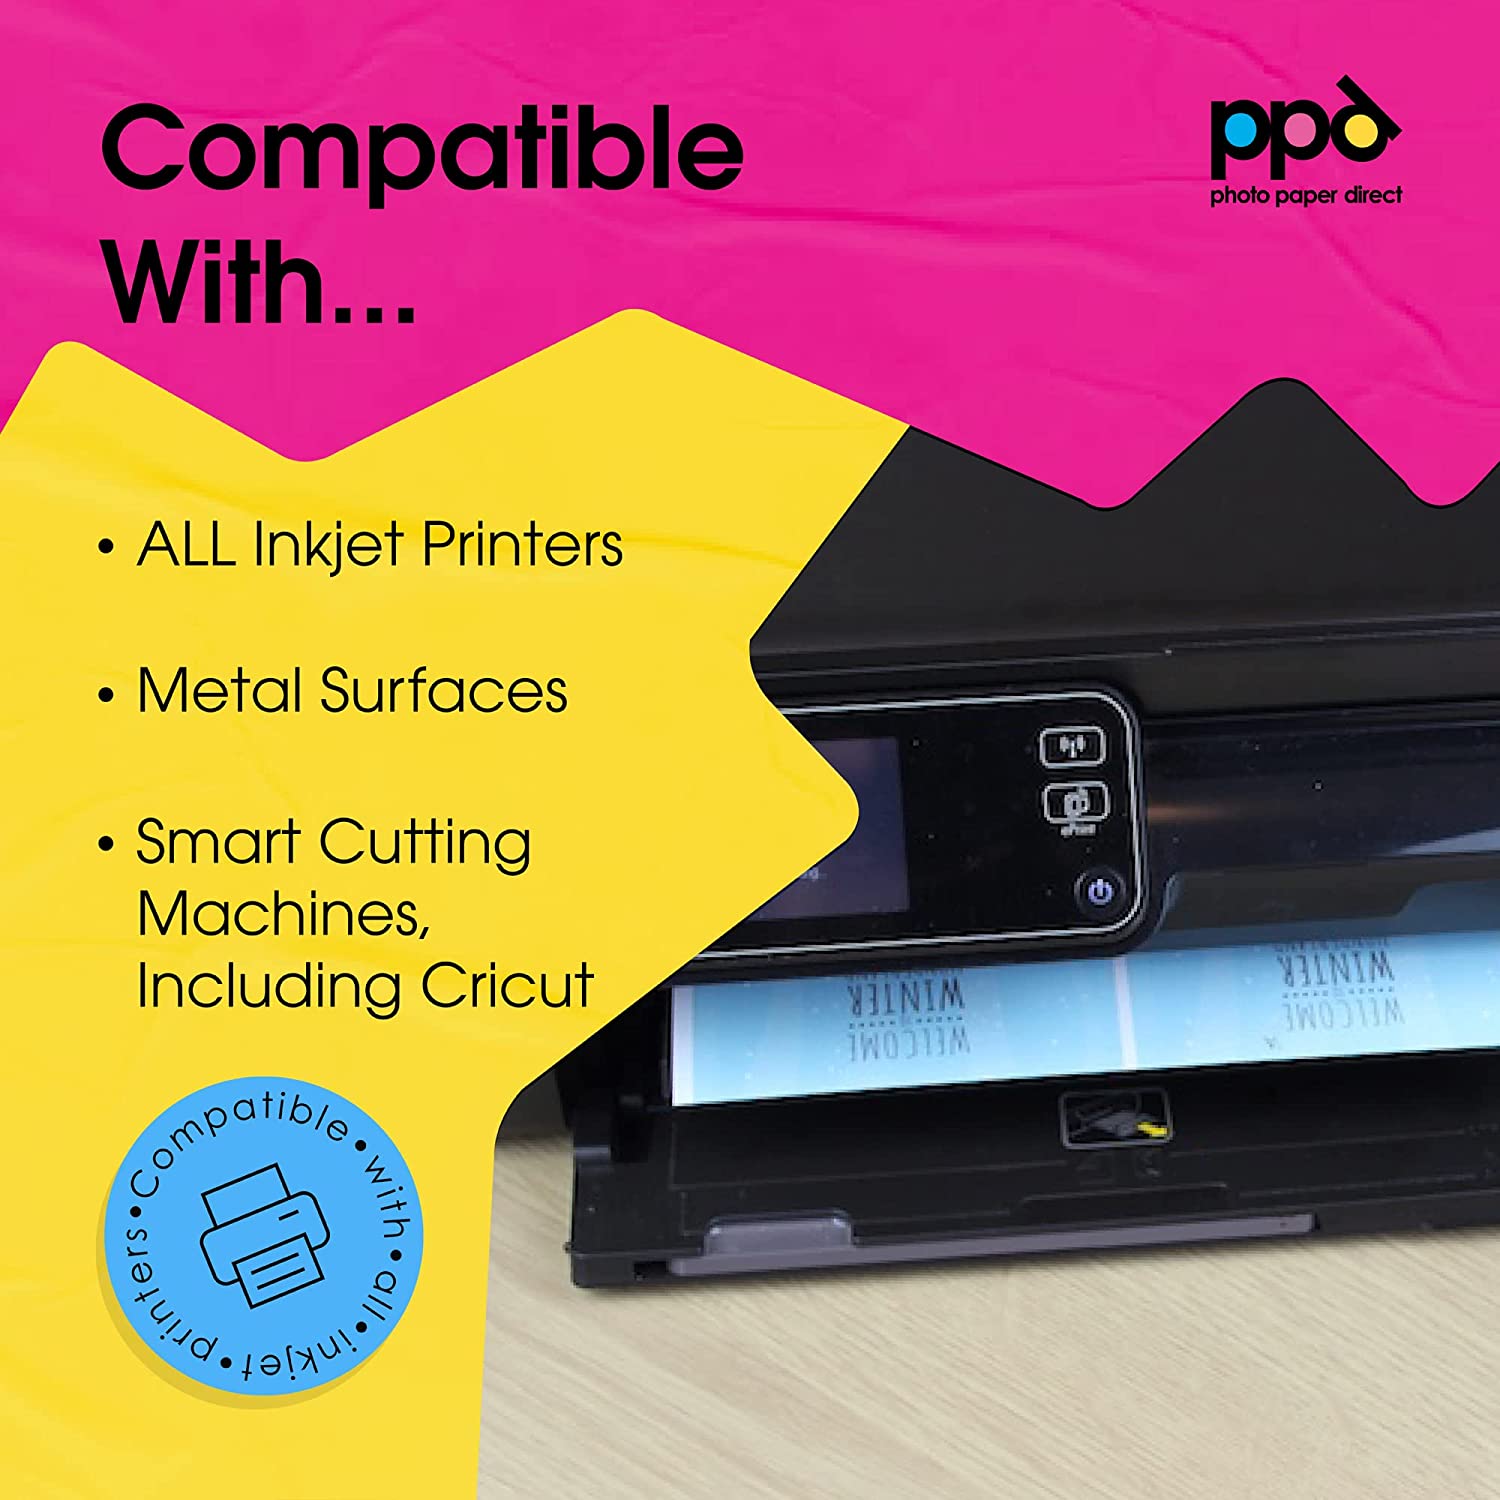 PPD Inkjet Photo Magnetic Printable Matte Sheet LTR 8.5x11" PPD-32